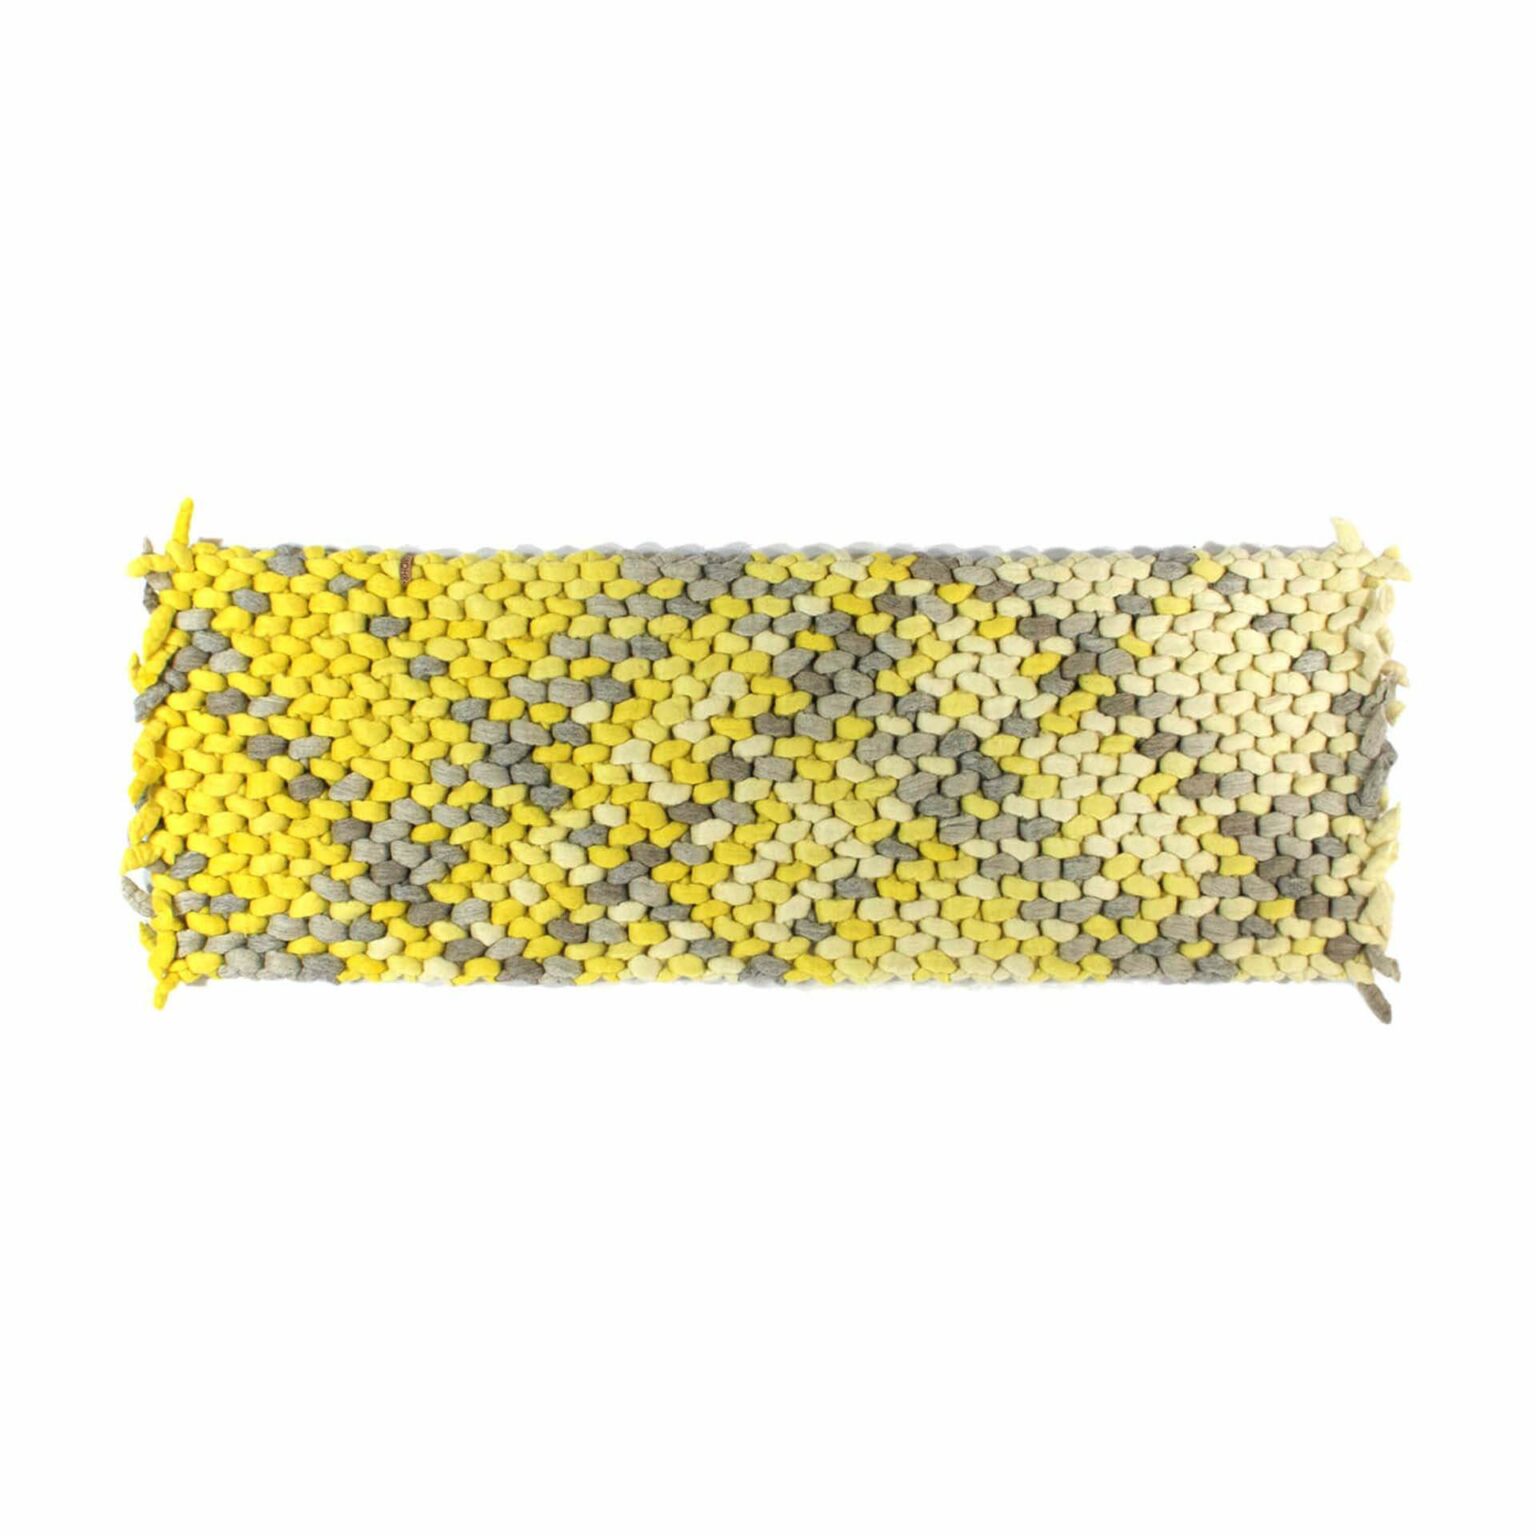 Teppich-schafwolle-farbverlauf-geknotet-wandteppich-schafwollteppich-wollteppich-wendland-michelle-mohr-gelb